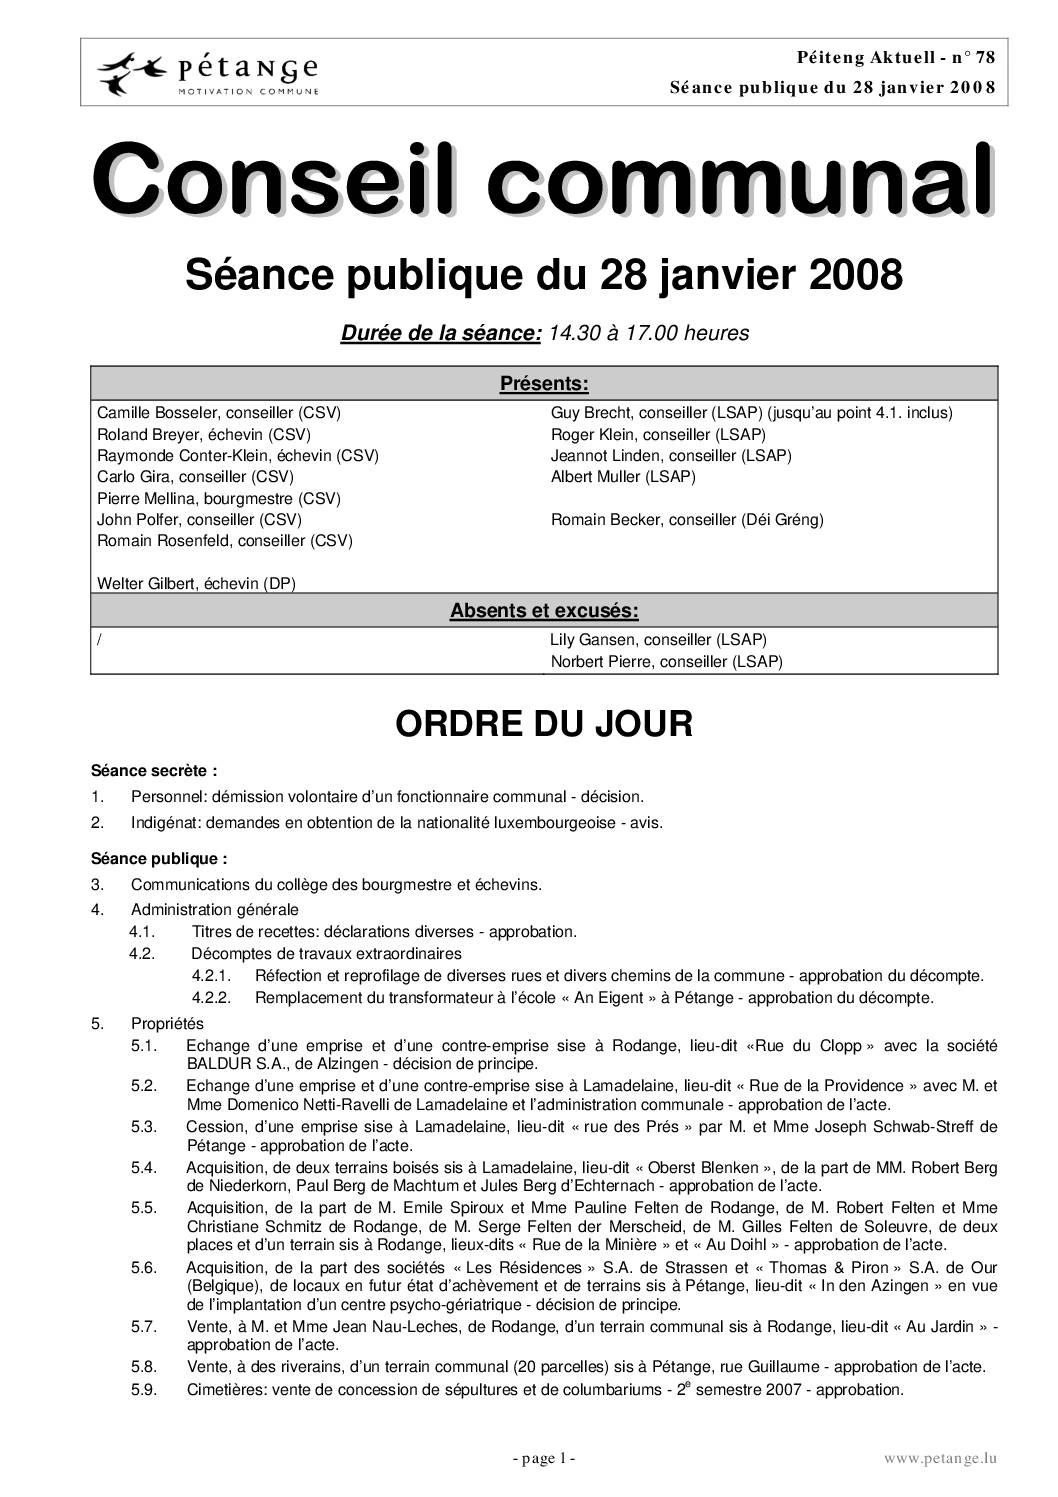 Rapport des séances du conseil communal du 28.01.2008 et 26.02.2008